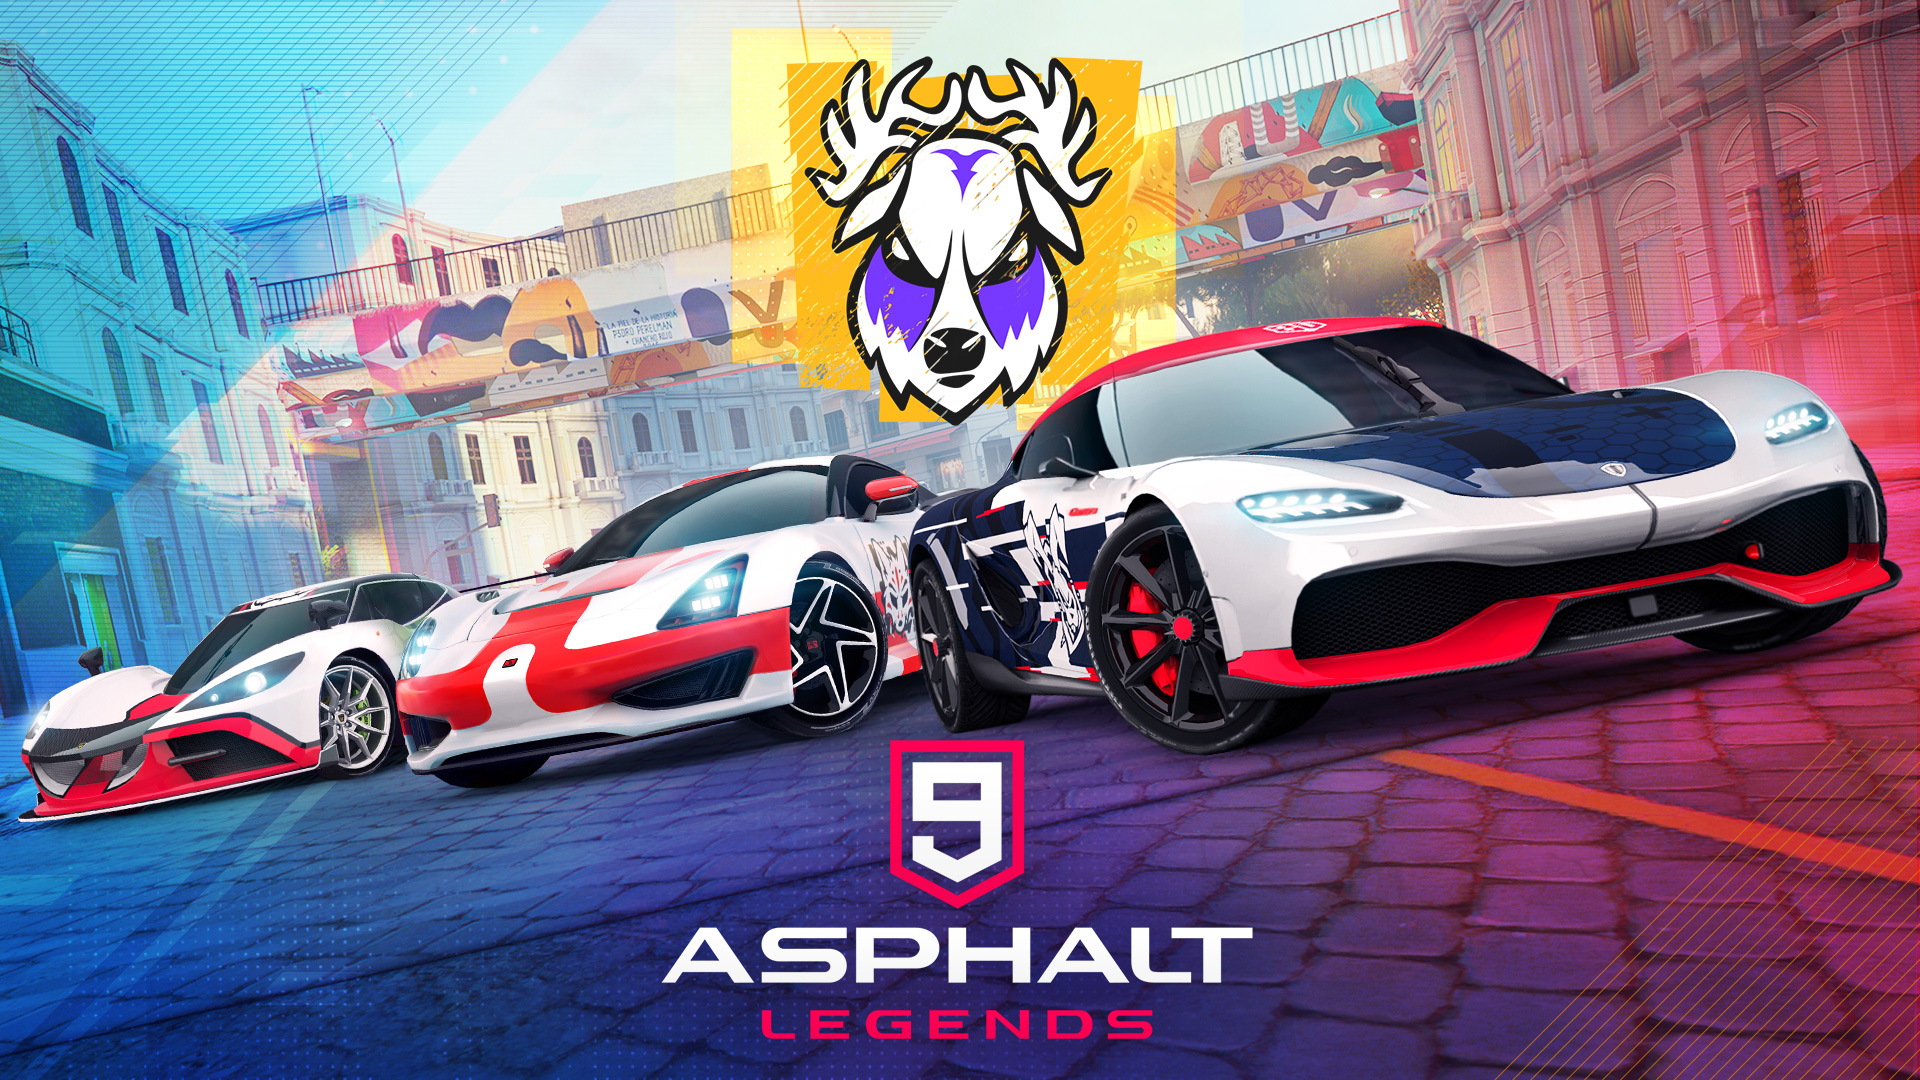 Asphalt 9: Legends, AMAZING NEW GAME 🚨: Asphalt 9: Legends just dropped  🏁🏎 Play now 👉 apple.co/AsphaltLegendsGame, By App Store